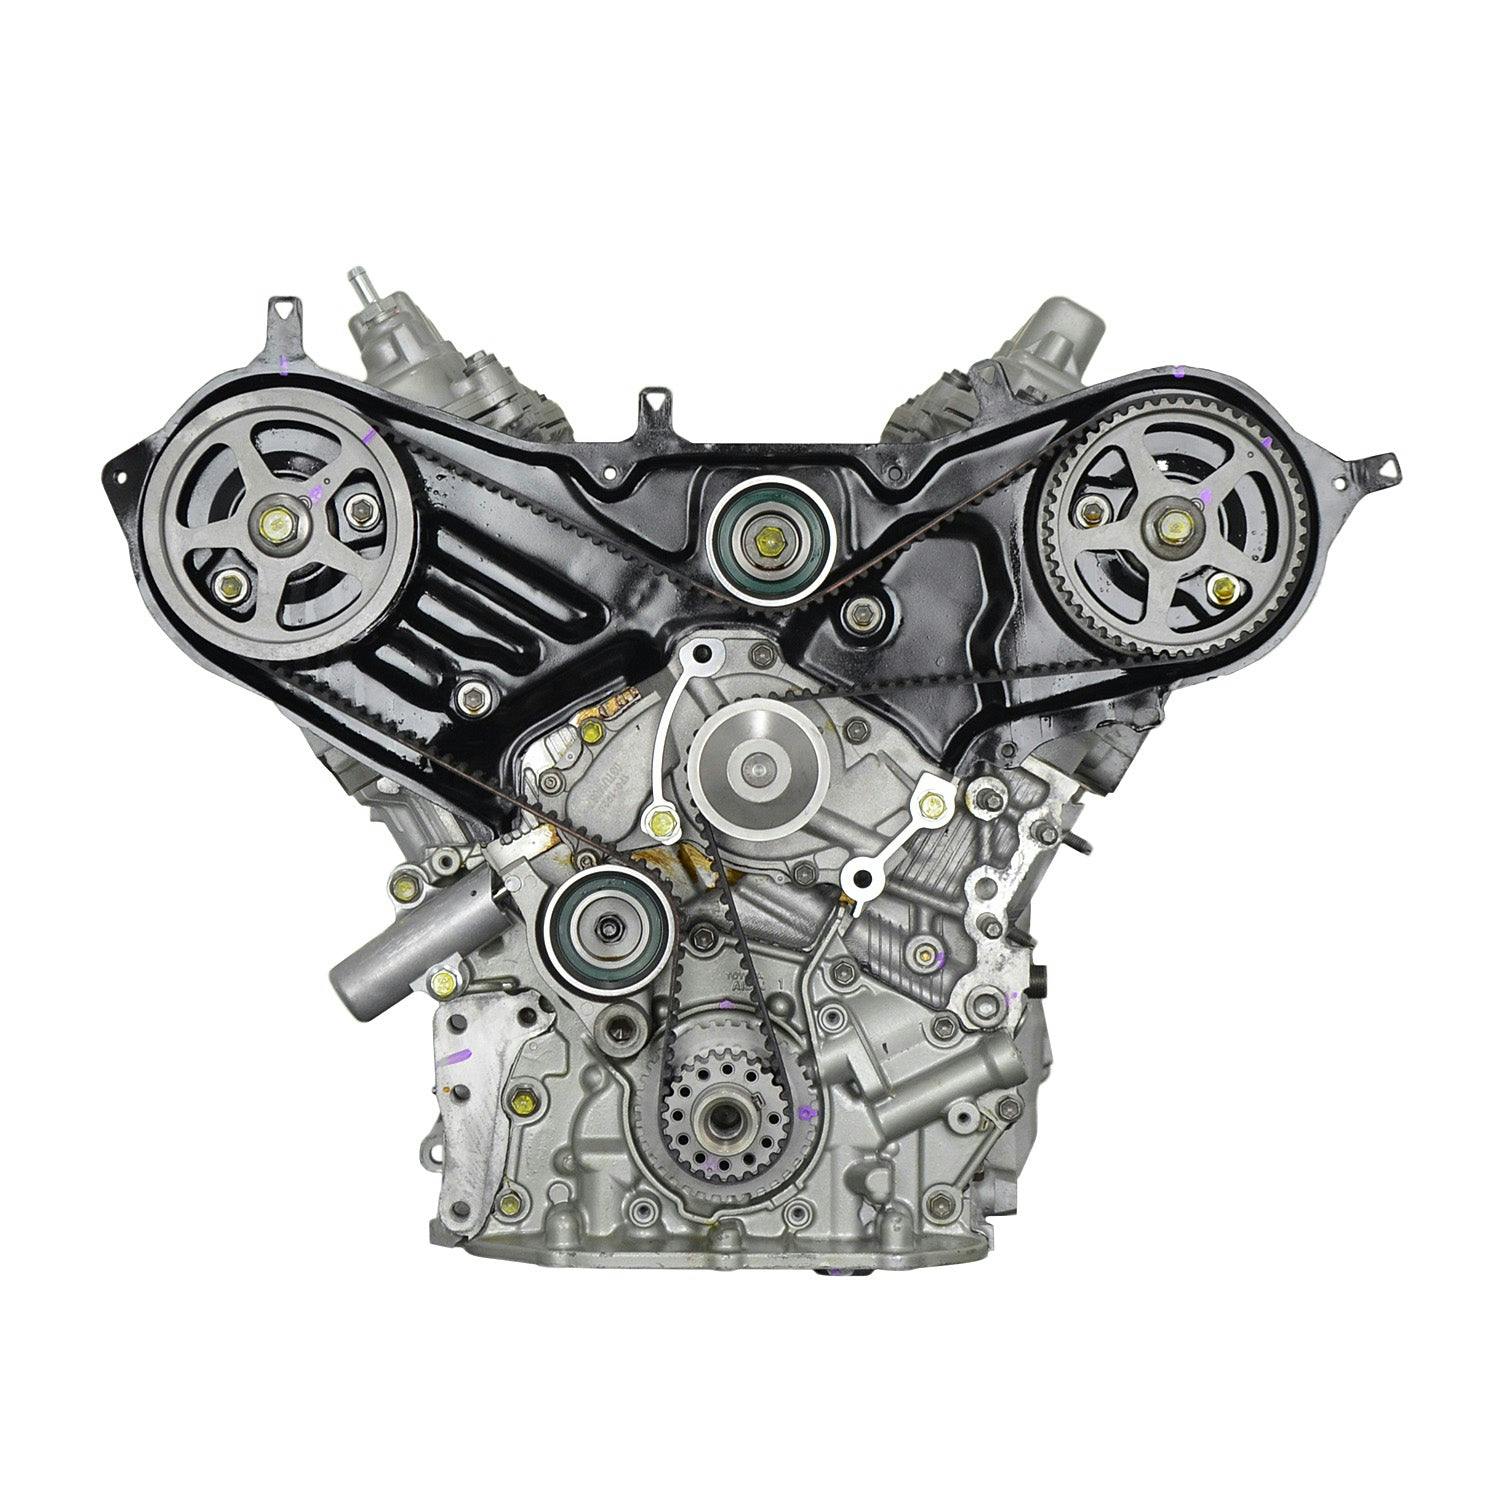 3L V6 Engine for 2001-2003 Toyota Highlander AWD